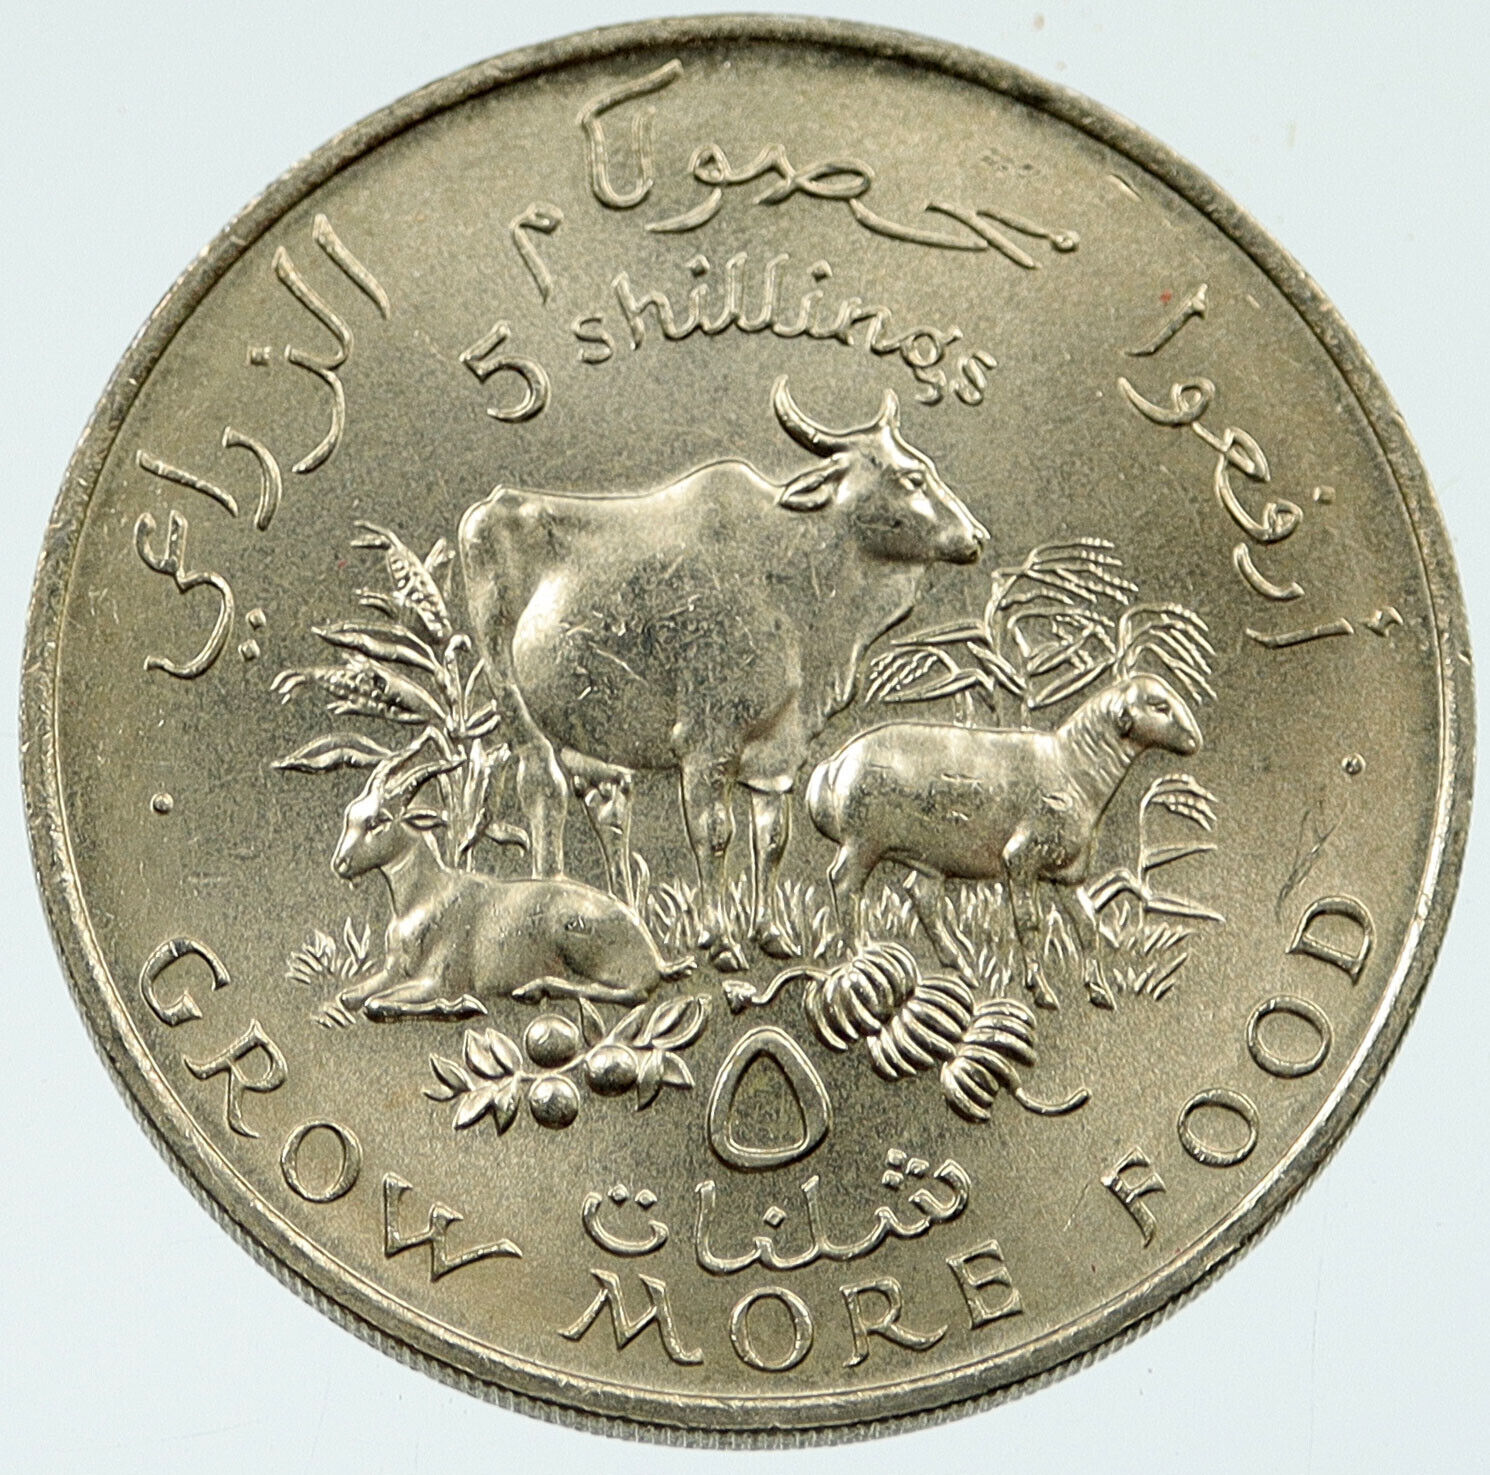 1970 SOMALIA Somali Republic UN FAO Agricultural COW 5 Shillings Coin i117322